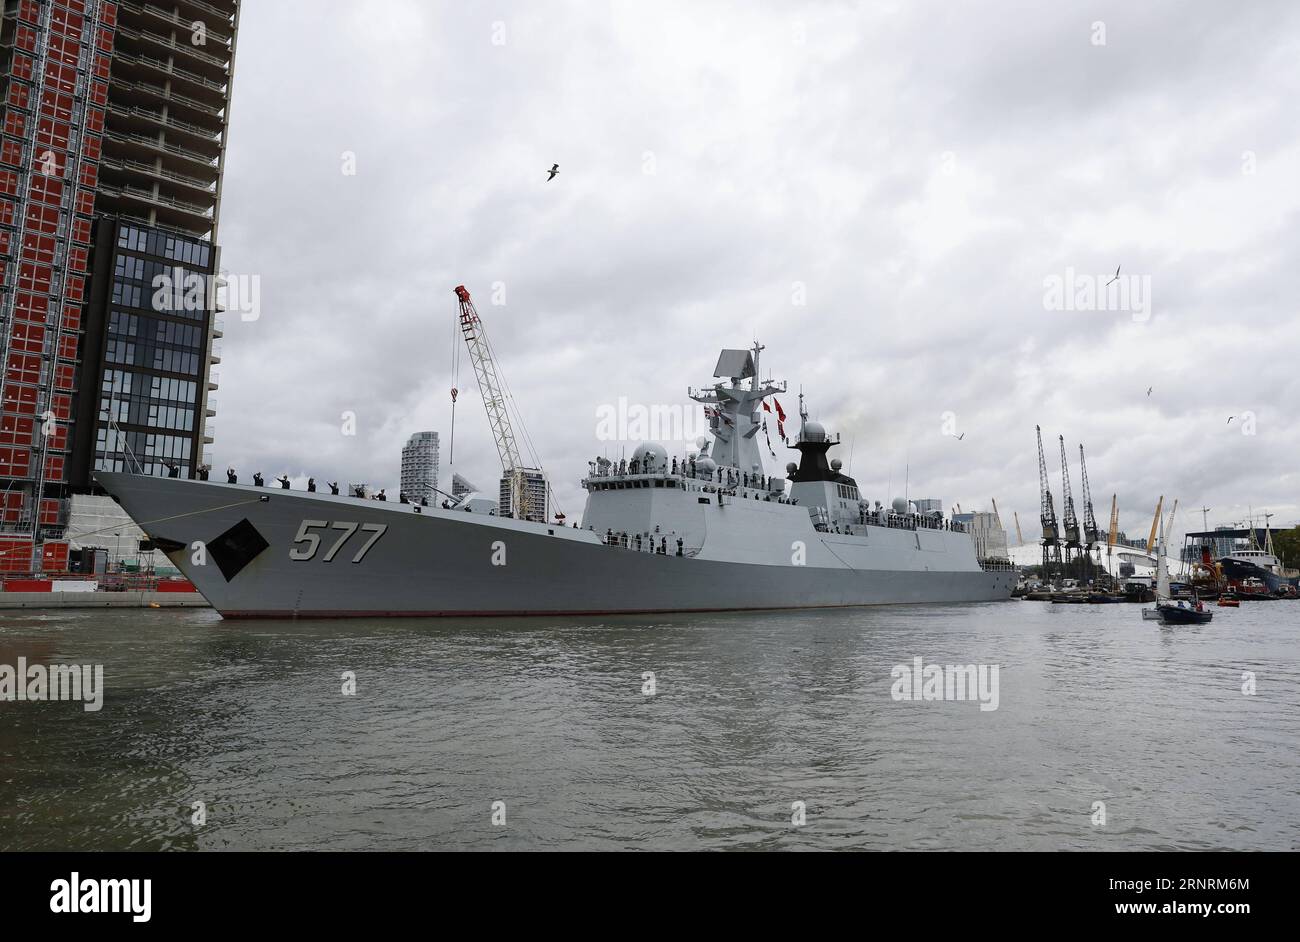 (171007) -- LONDRES, 7 octobre 2017 -- la frégate de missiles guidés Huanggang de la 26e flotte d escorte navale chinoise part des docks de l Inde occidentale à Canary Wharf, dans l est de Londres, en Grande-Bretagne, le 7 octobre 2017. La 26e flotte d'escorte navale de Chine a quitté d'ici samedi après une visite amicale de cinq jours en Grande-Bretagne. La flotte, composée des frégates de missiles guidés Huanggang et Yangzhou, et du navire de ravitaillement complet Gaoyouhu, a fait escale mardi au Canary Wharf dans l'est de Londres, la troisième étape de son voyage mondial après avoir terminé sa mission d'escorte en août dans le golfe d'Aden et les eaux somaliennes. BRITAIN-LOND Banque D'Images